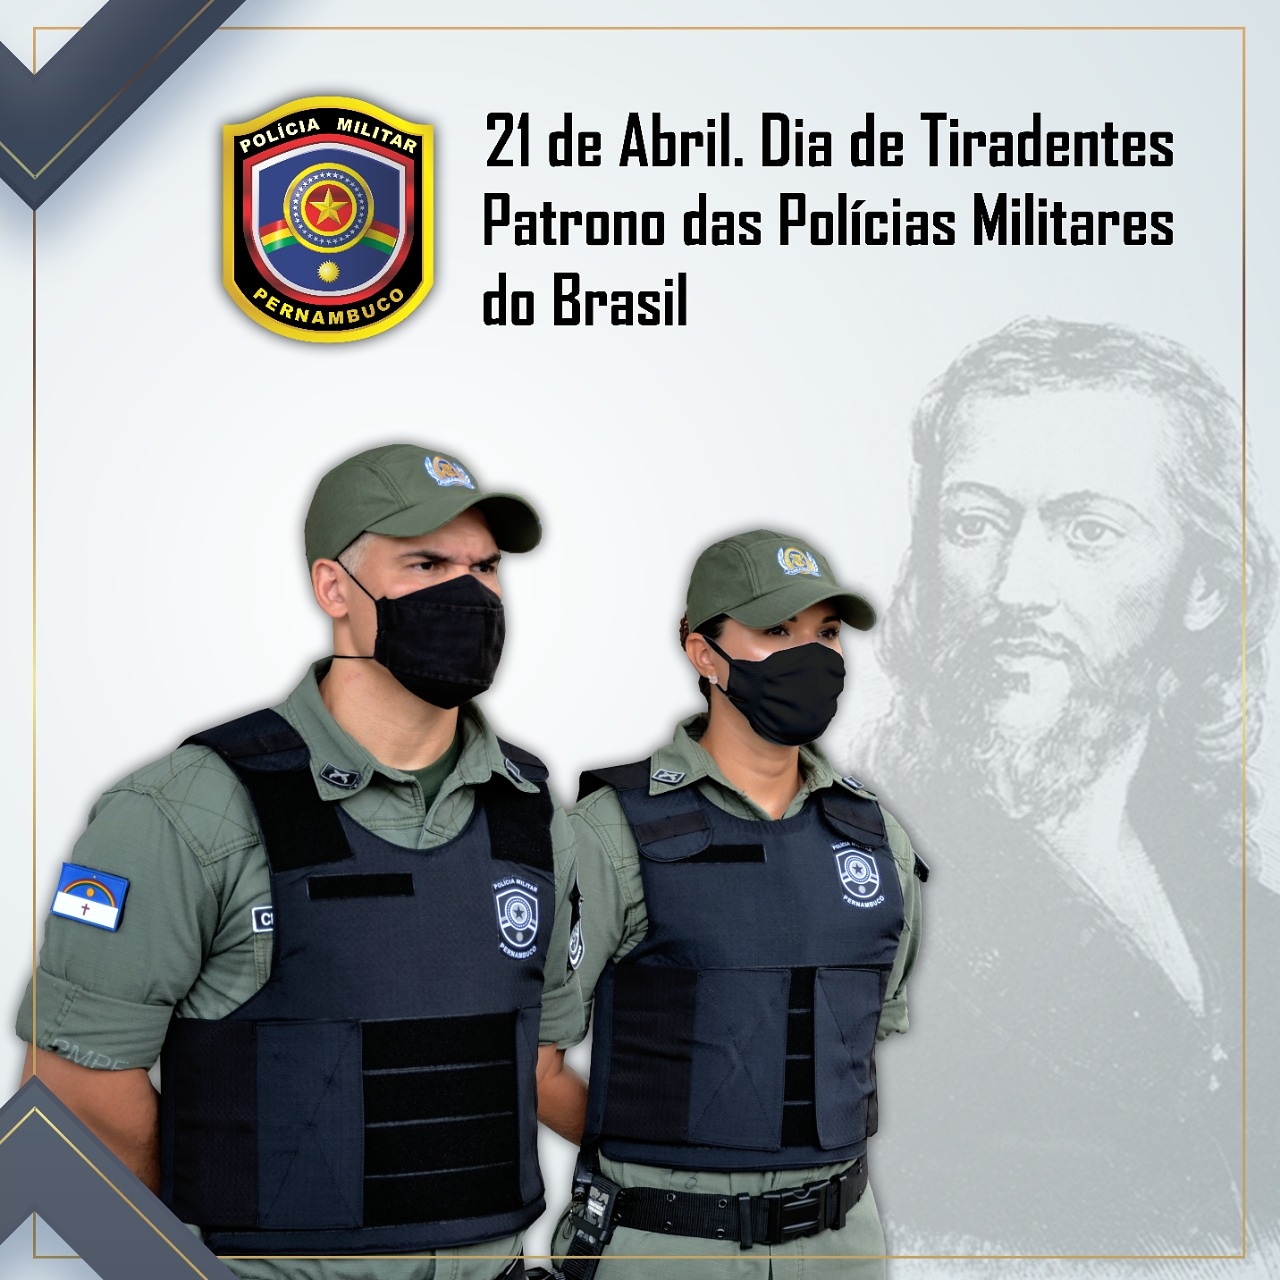 Tiradentes: Patrono das Polícias Militares do Brasil - Polícia Militar de  Pernambuco